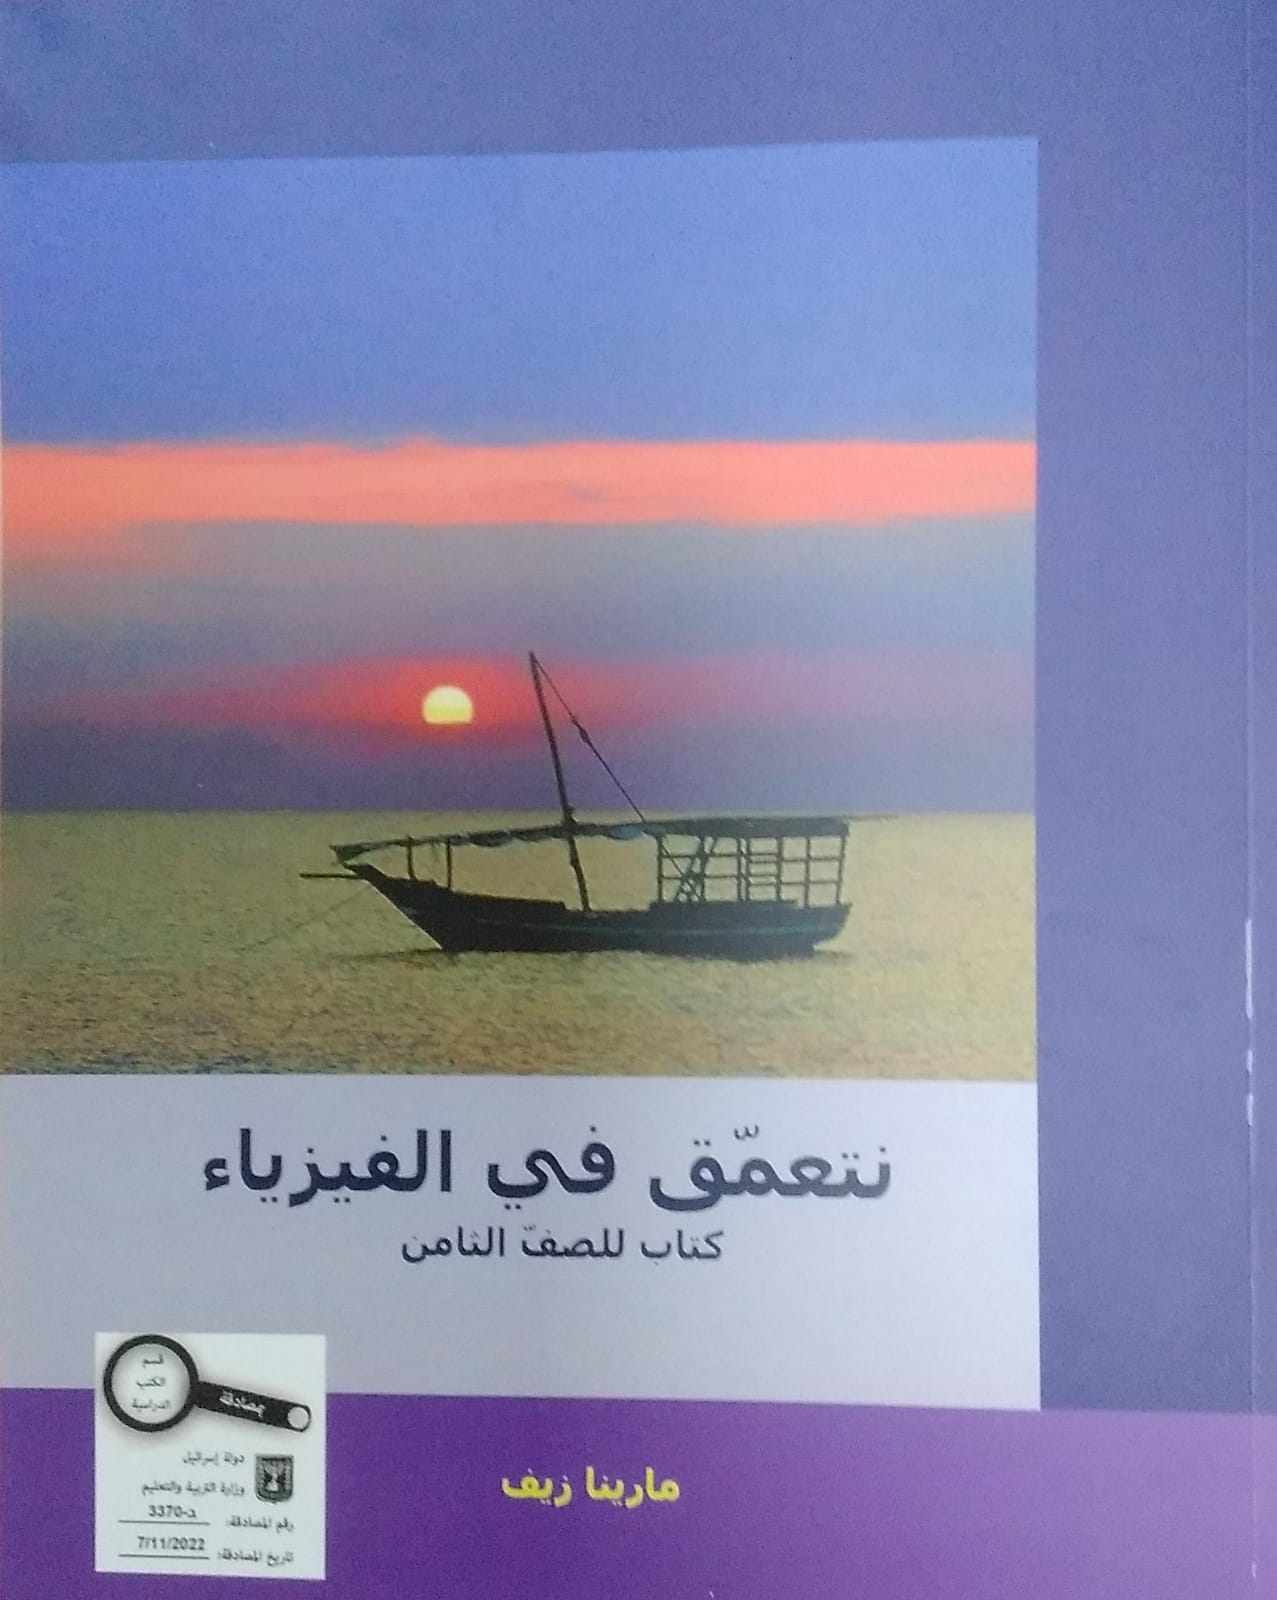 מתעמקים בפיזיקה - ערבית